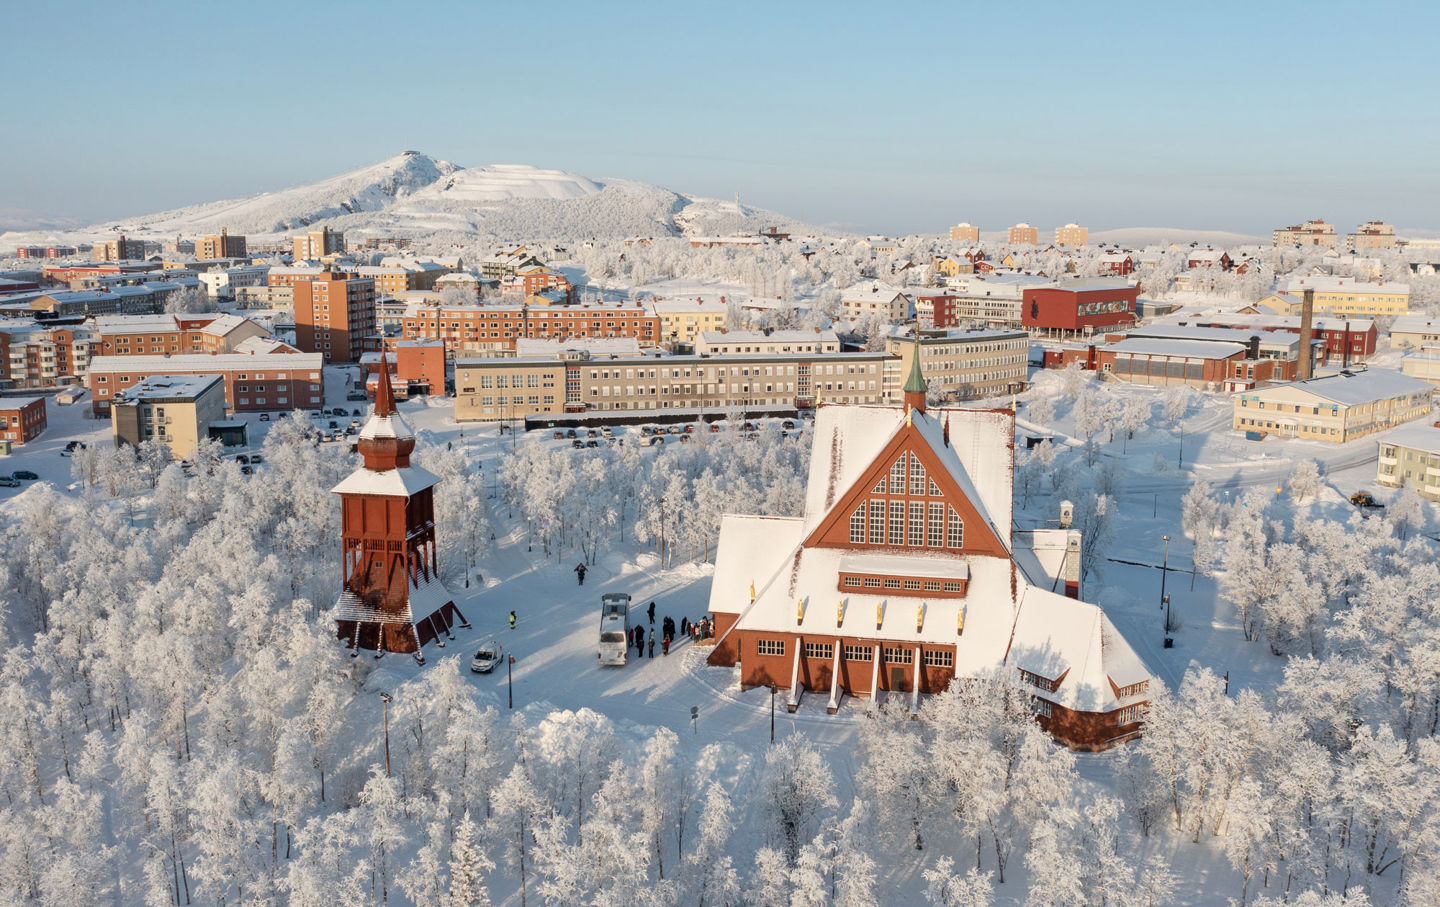 Drönarbild över ett snöigt Kiruna.